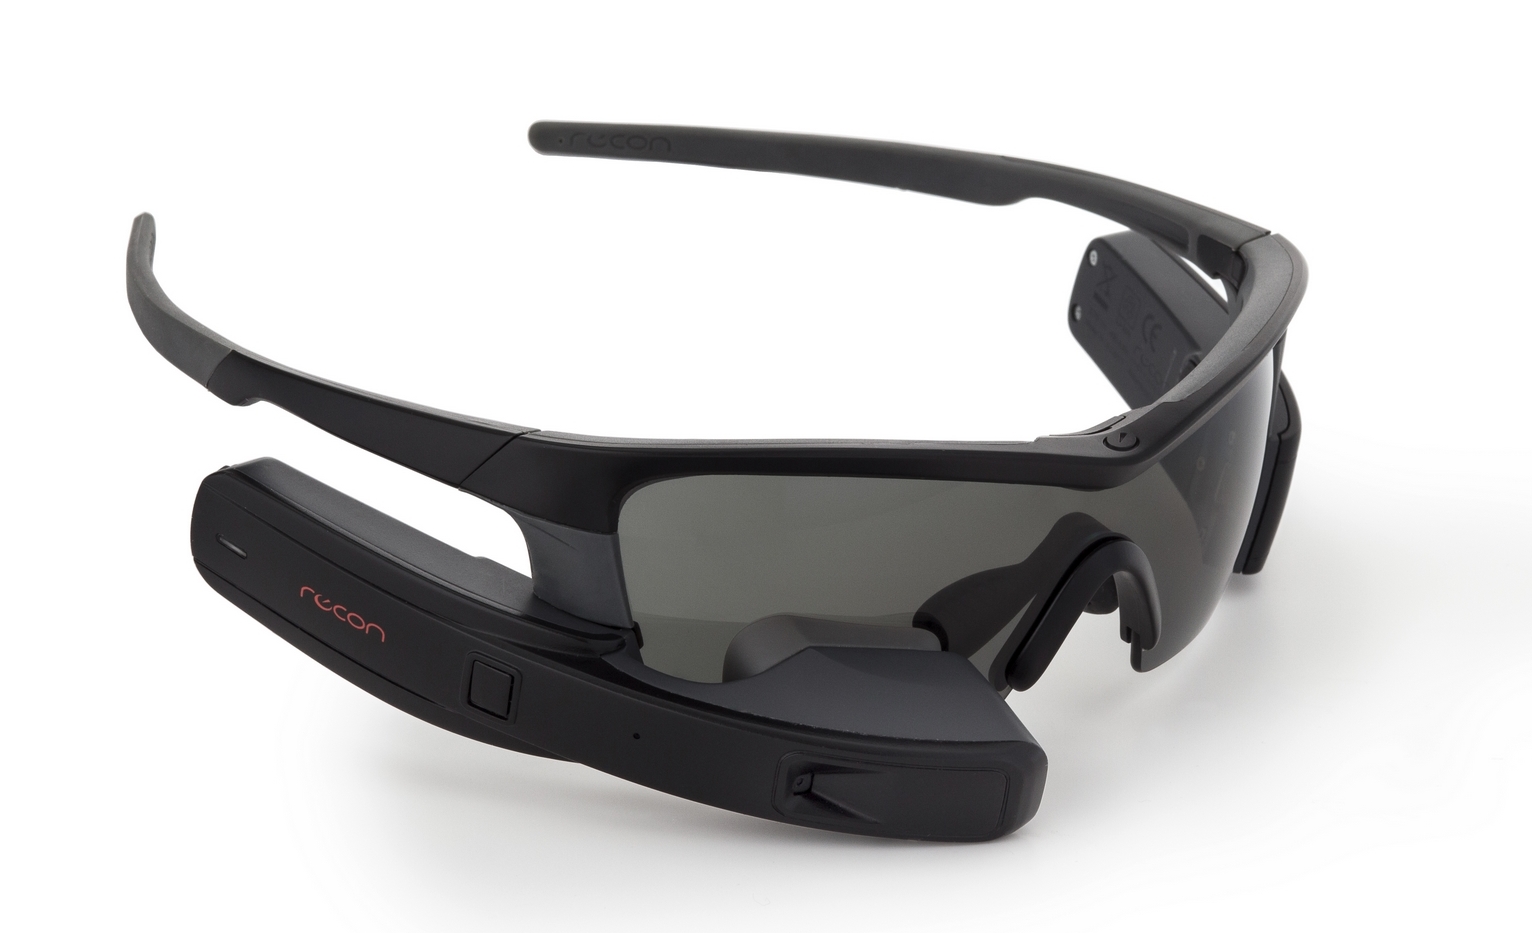 Dette er Recon Jet. Salget stoppet sent i fjor. Nå skal Intel lansere nye smartbriller under ny merkevare.